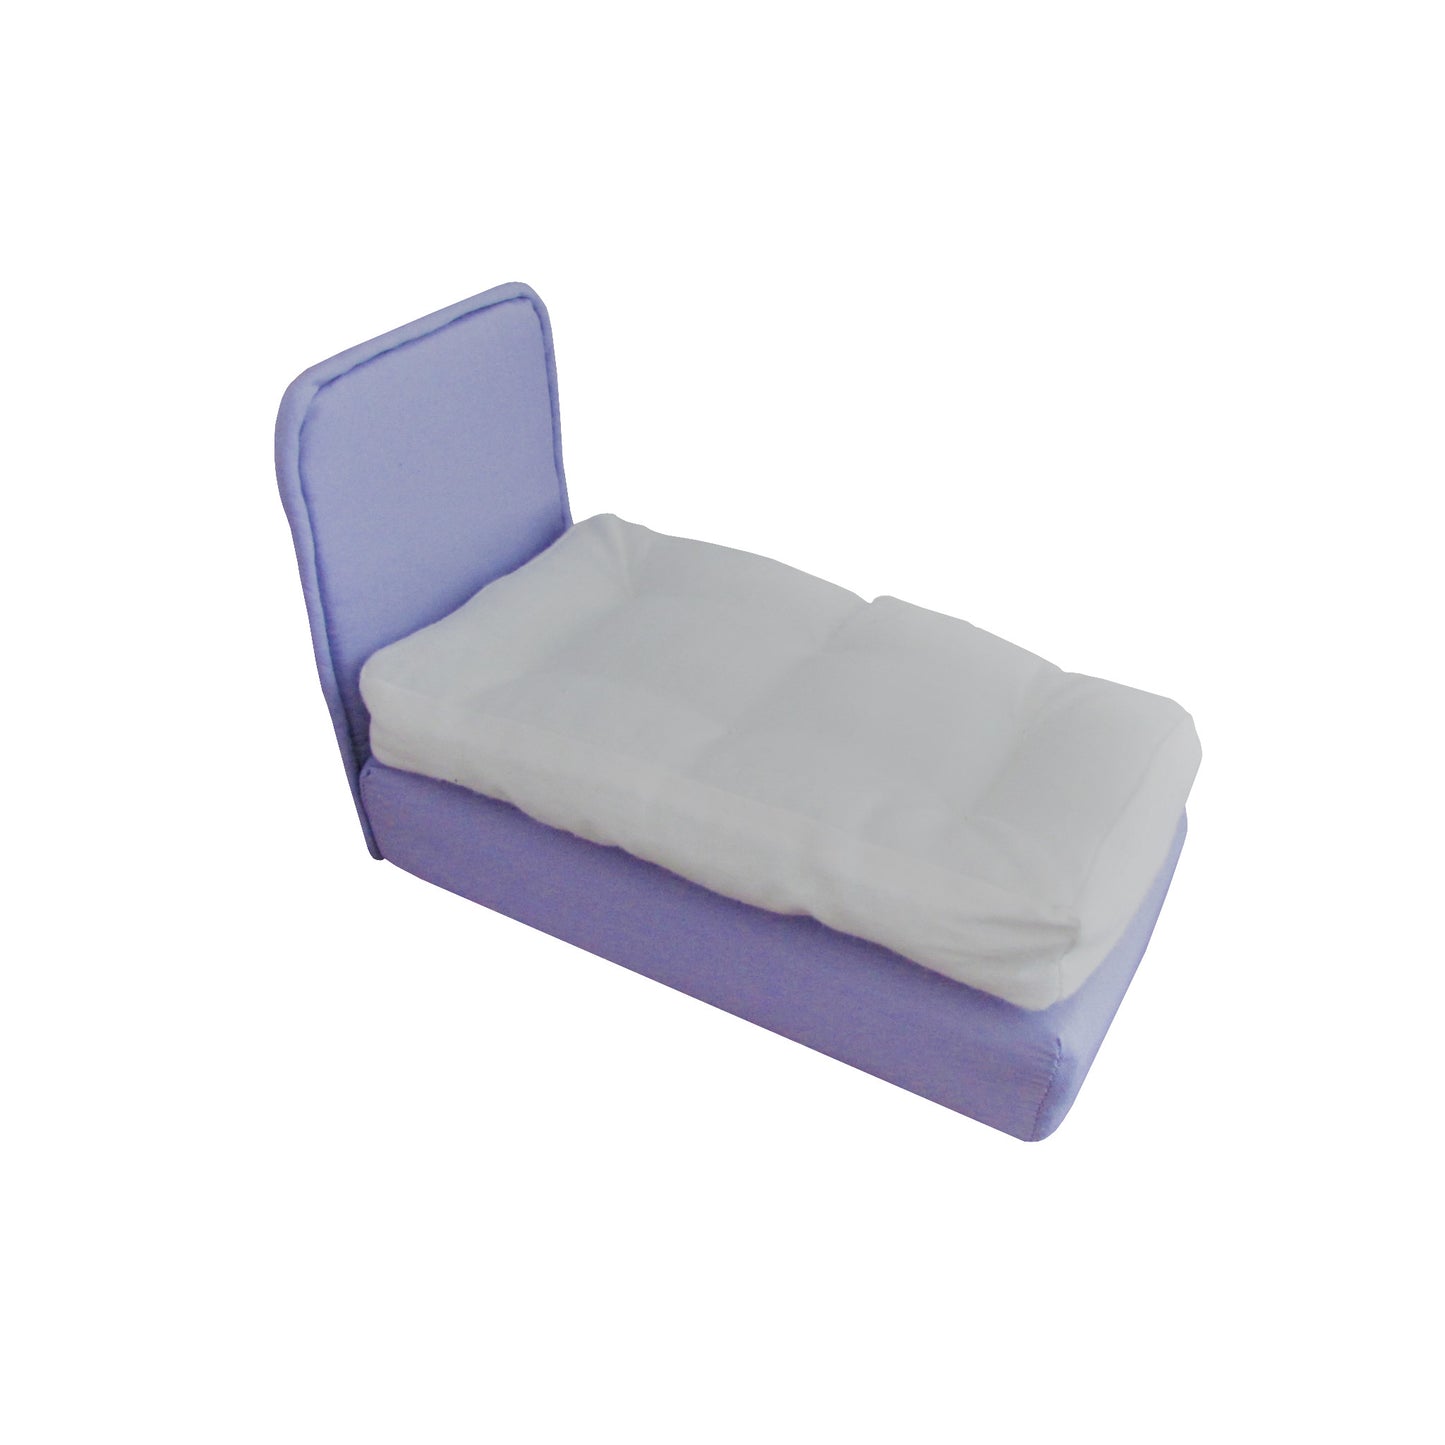 Upholstered Lavender Doll Bed for 6.5-inch dolls